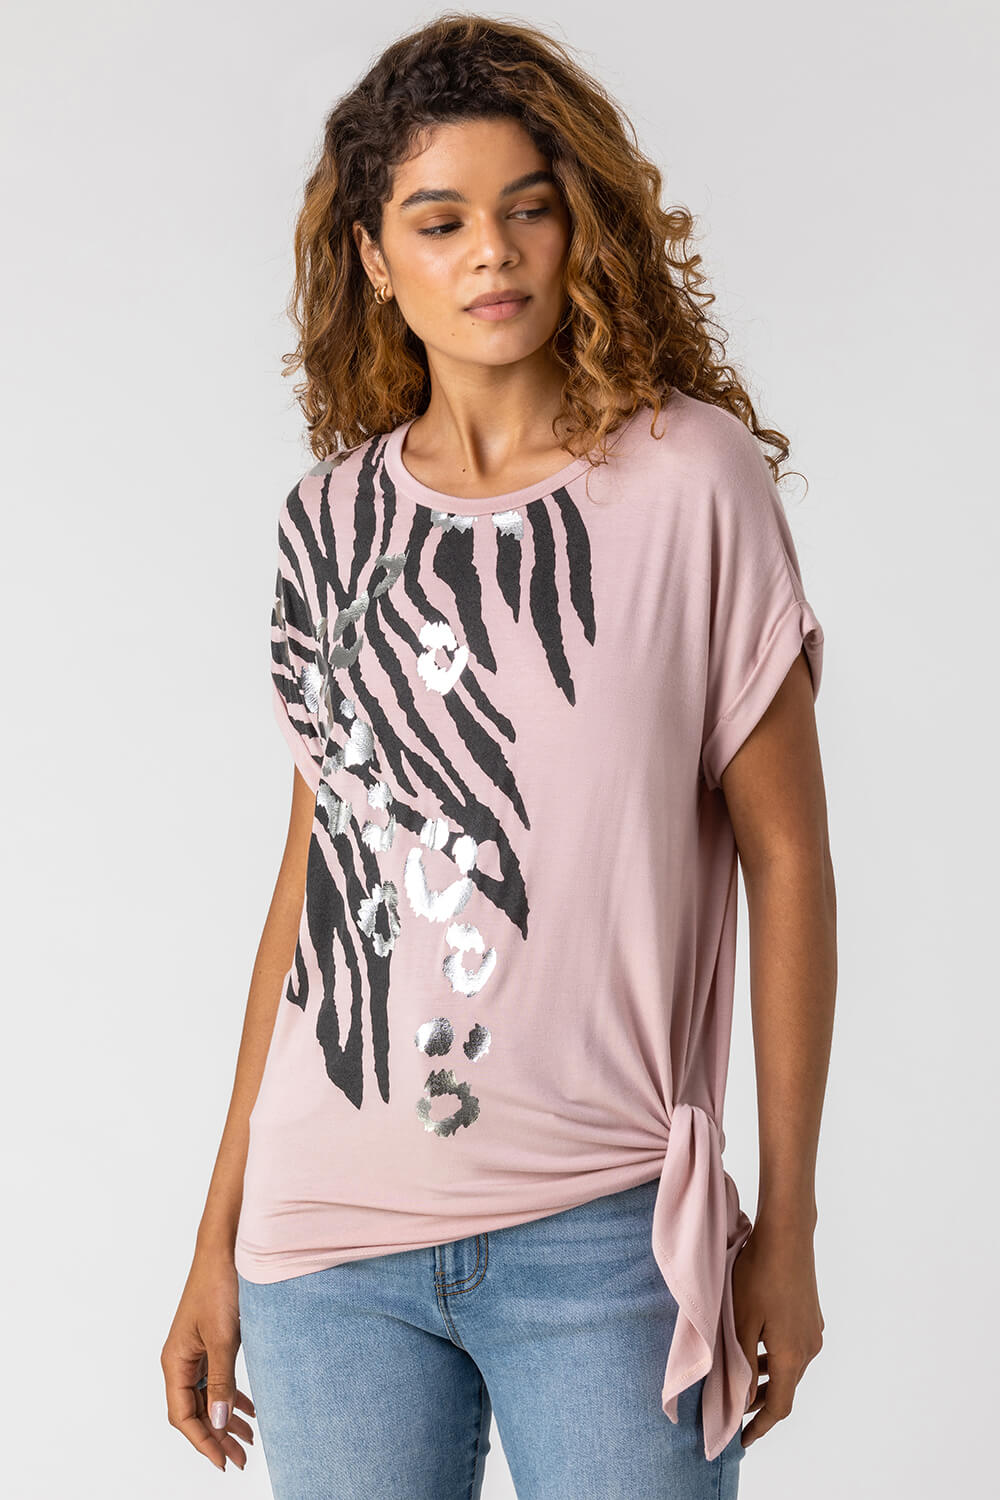 Comfort Shirt Adult Shirt Motivational Shirt Cute Shirt Graphic Shirt Gift For BFF Animal Shirt Leopard Shirt Never Been Seen Shirt